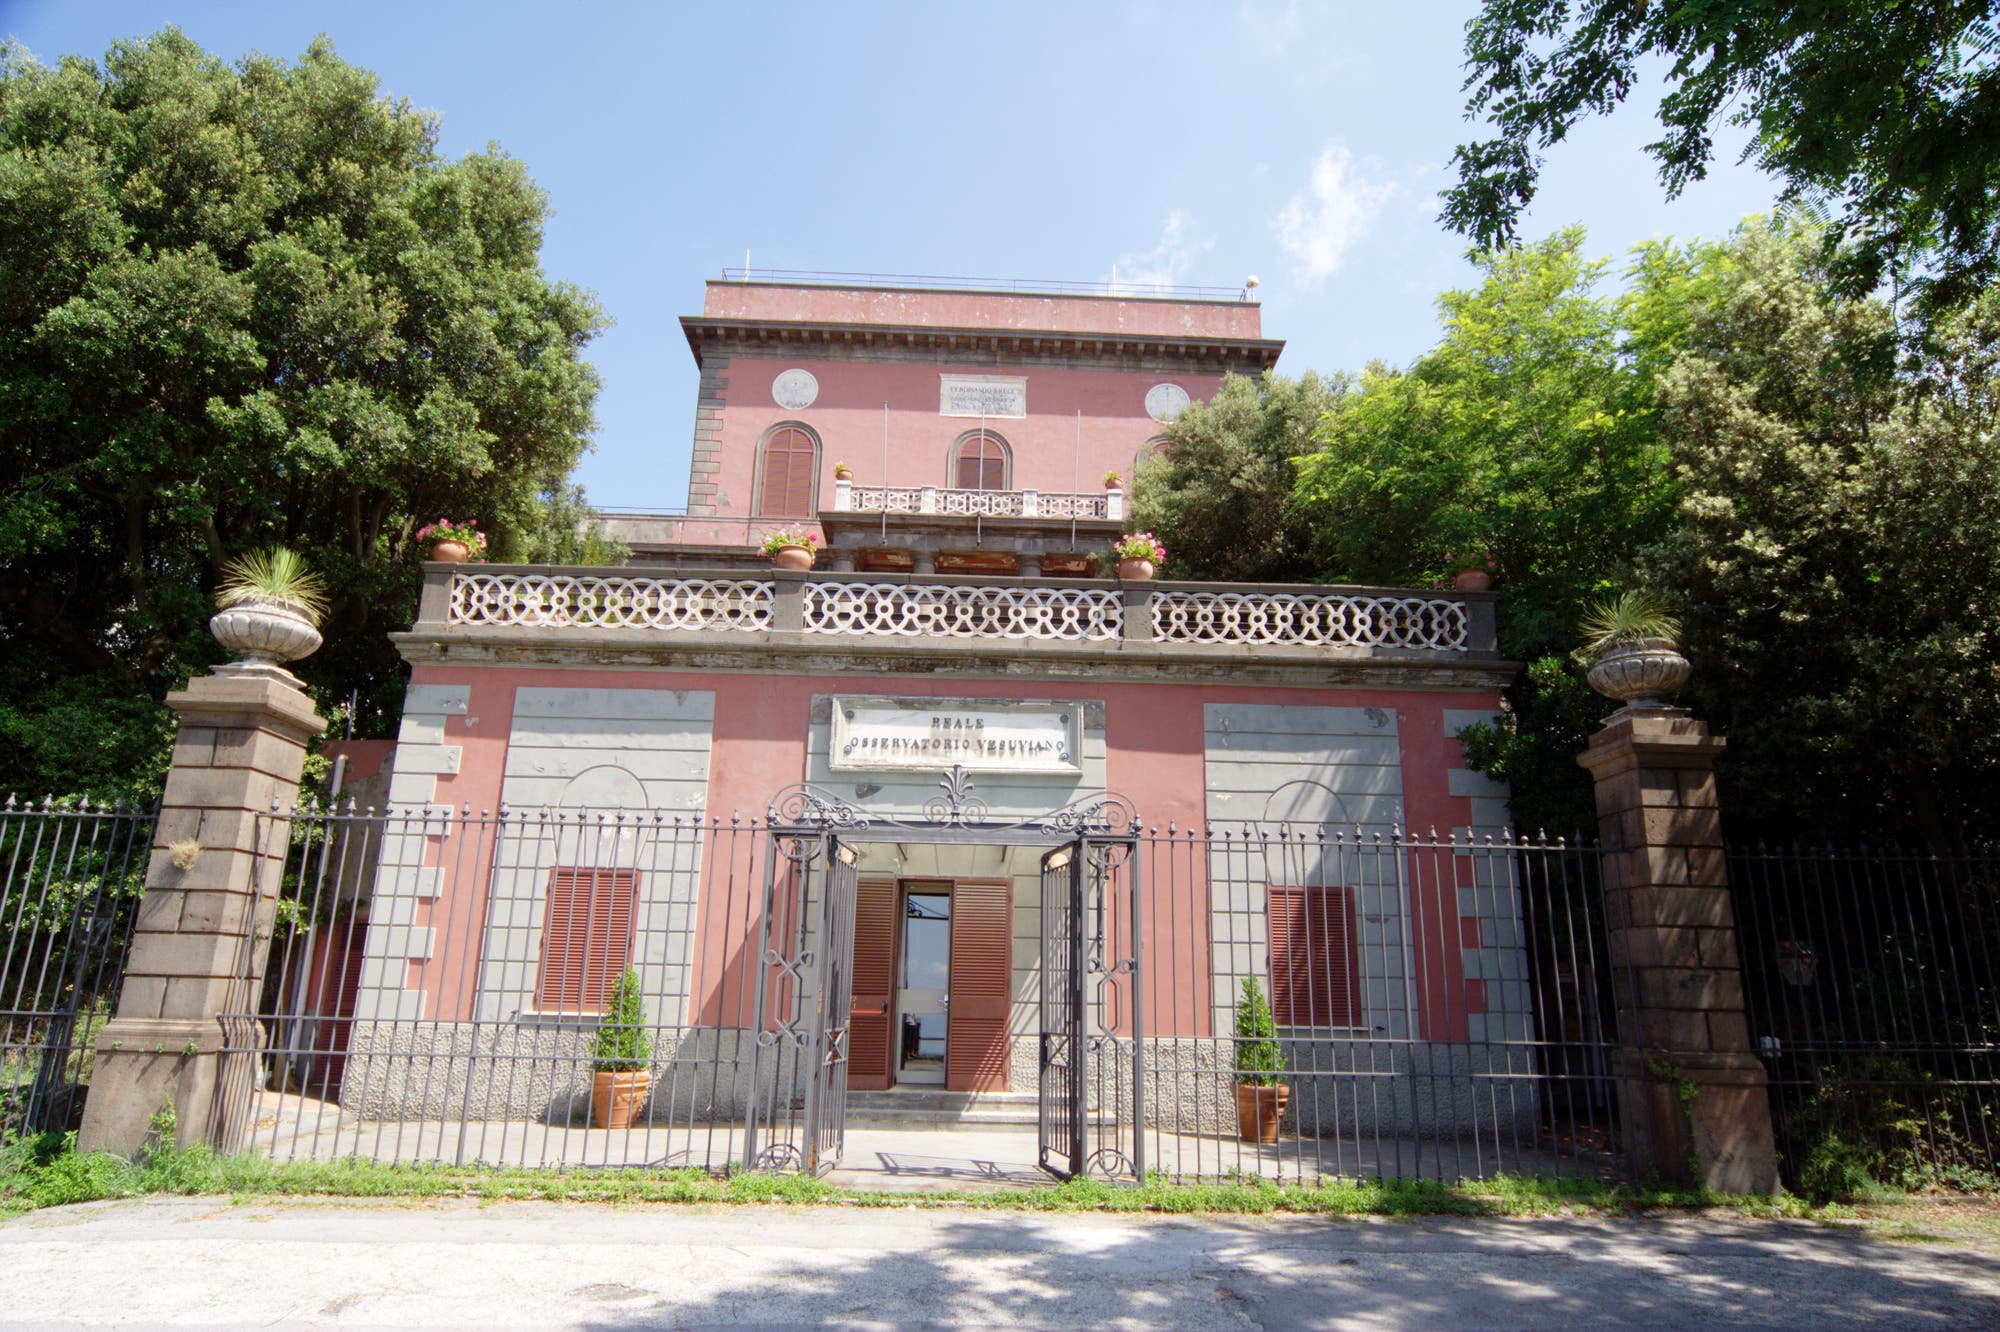 Das Vesuv-Observatorium mit klassizistischer Fassade und Anstrich in Altrosa ist heute ein Museum.